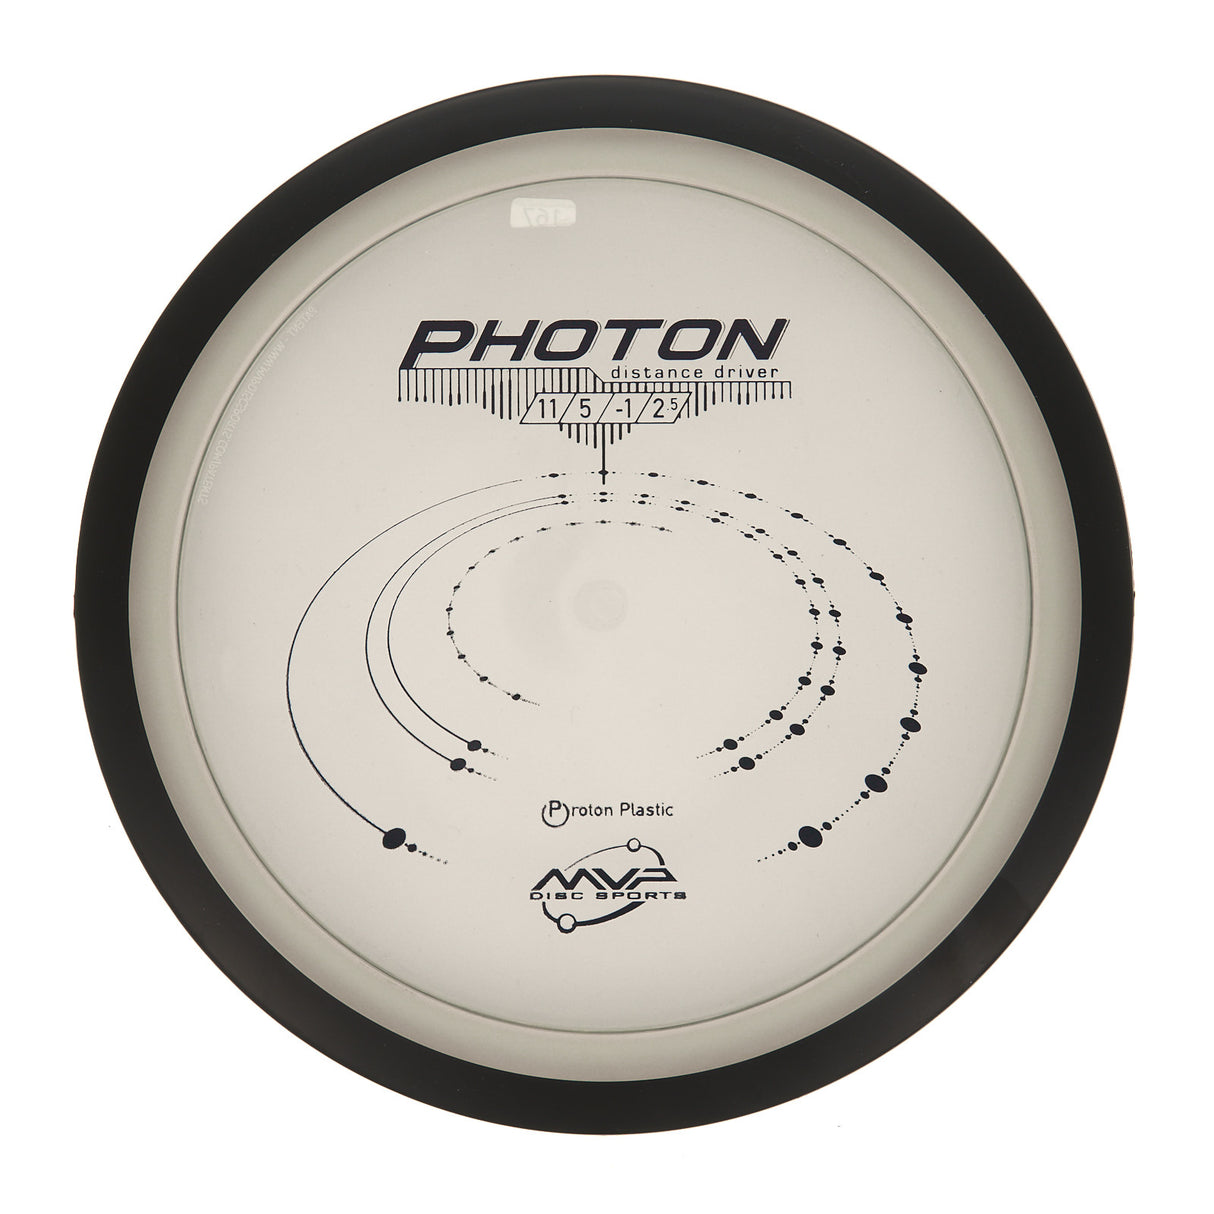 MVP Photon - Proton 165g | Style 0002